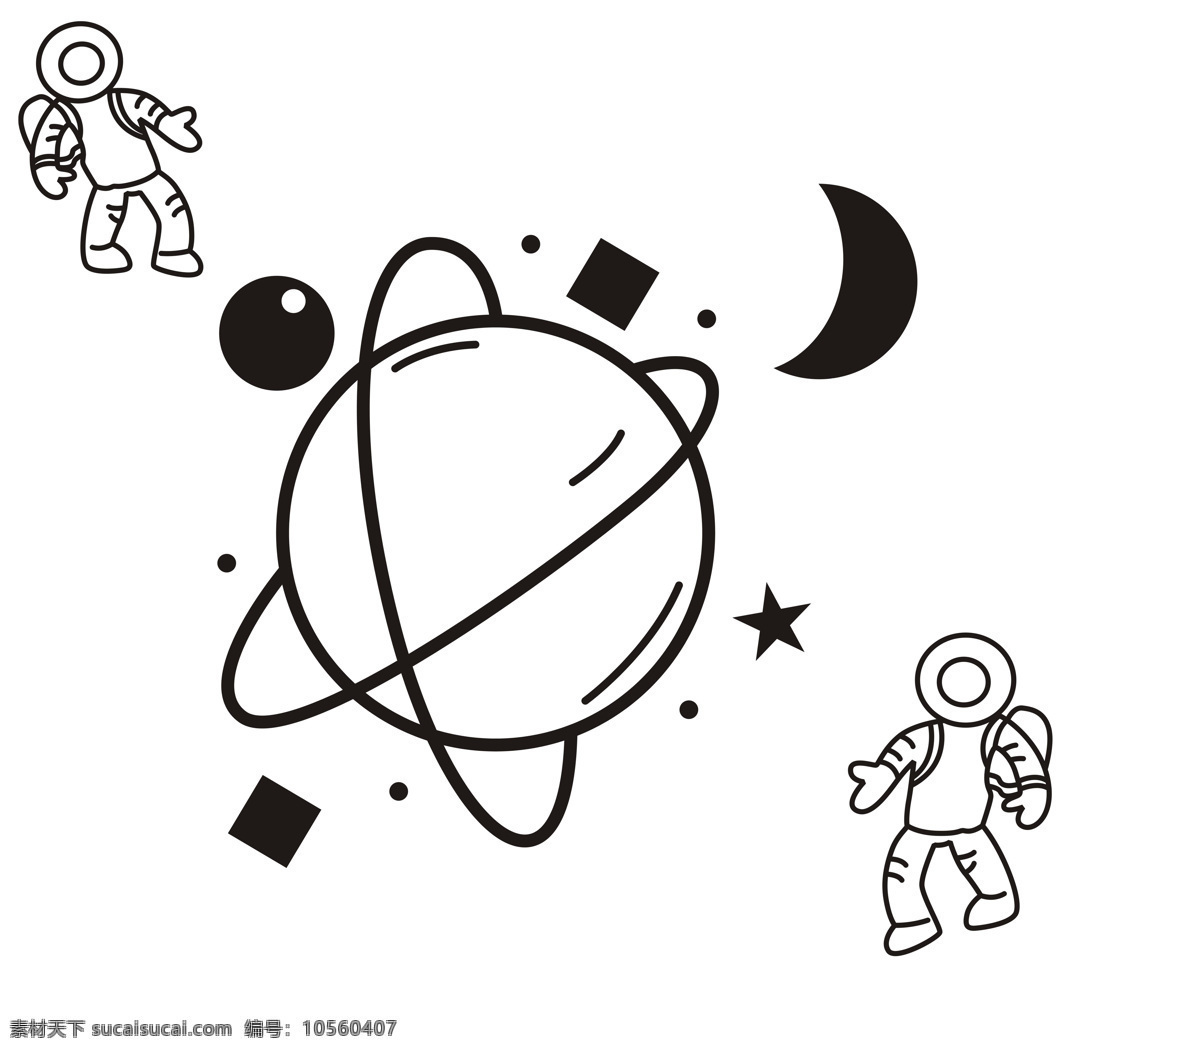 宇宙 卡通 图 班 服 图案 星球 班服图 宇航员 动漫动画 动漫人物